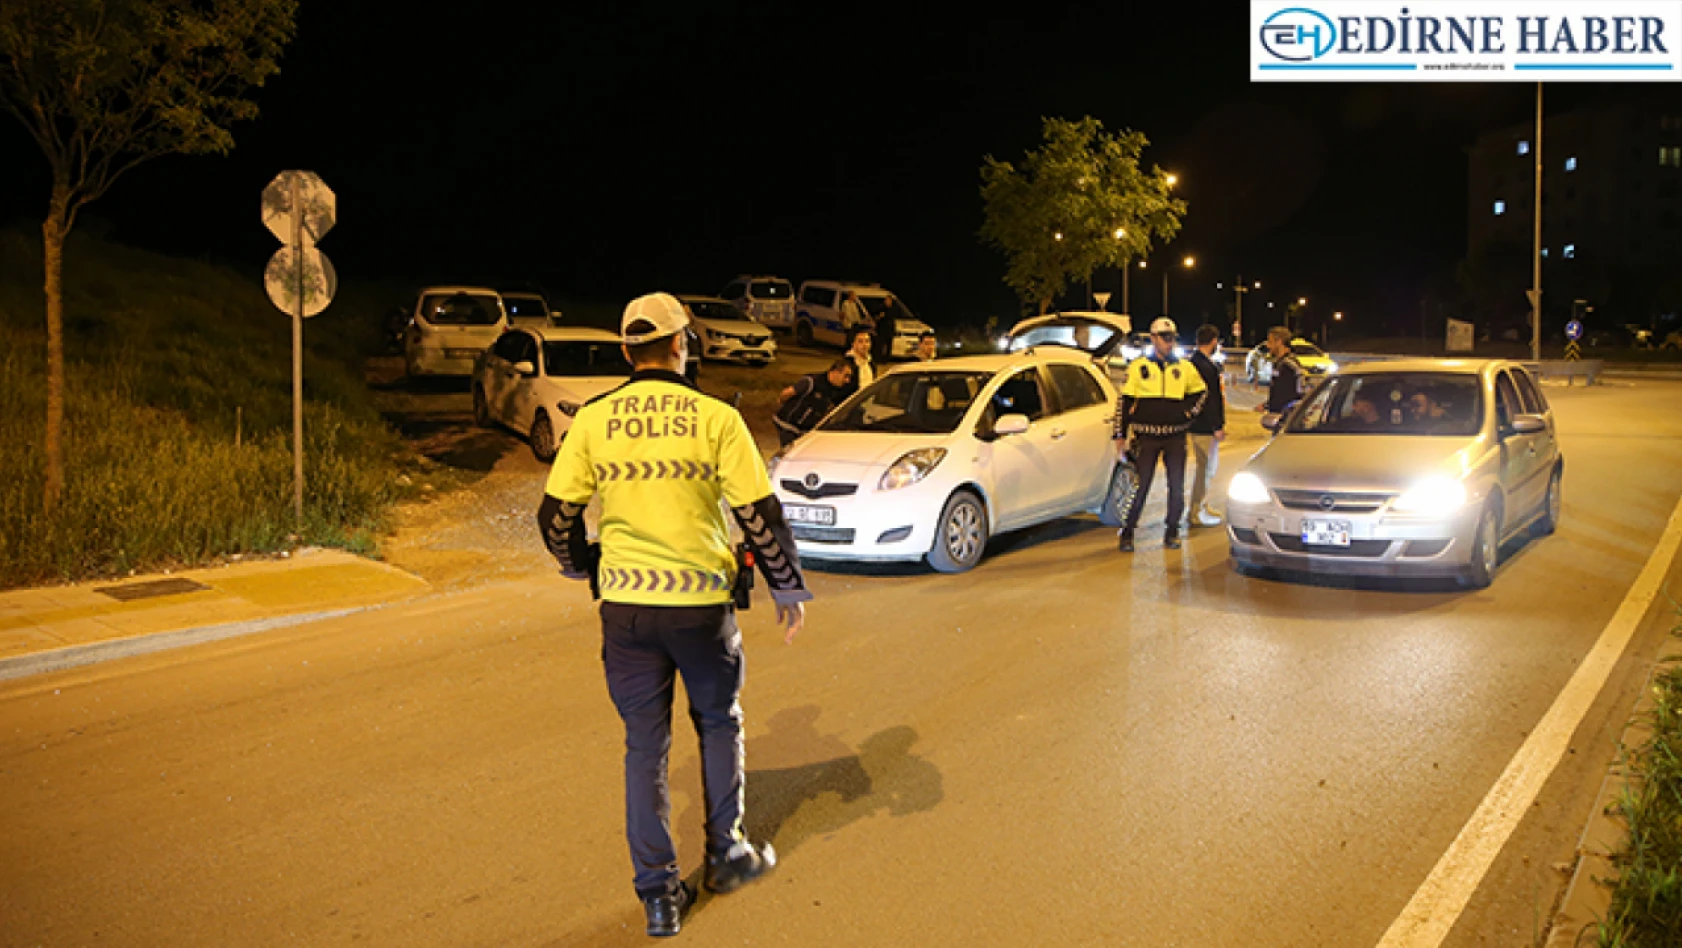 Edirne'de polis ekipleri 210 aracı denetledi